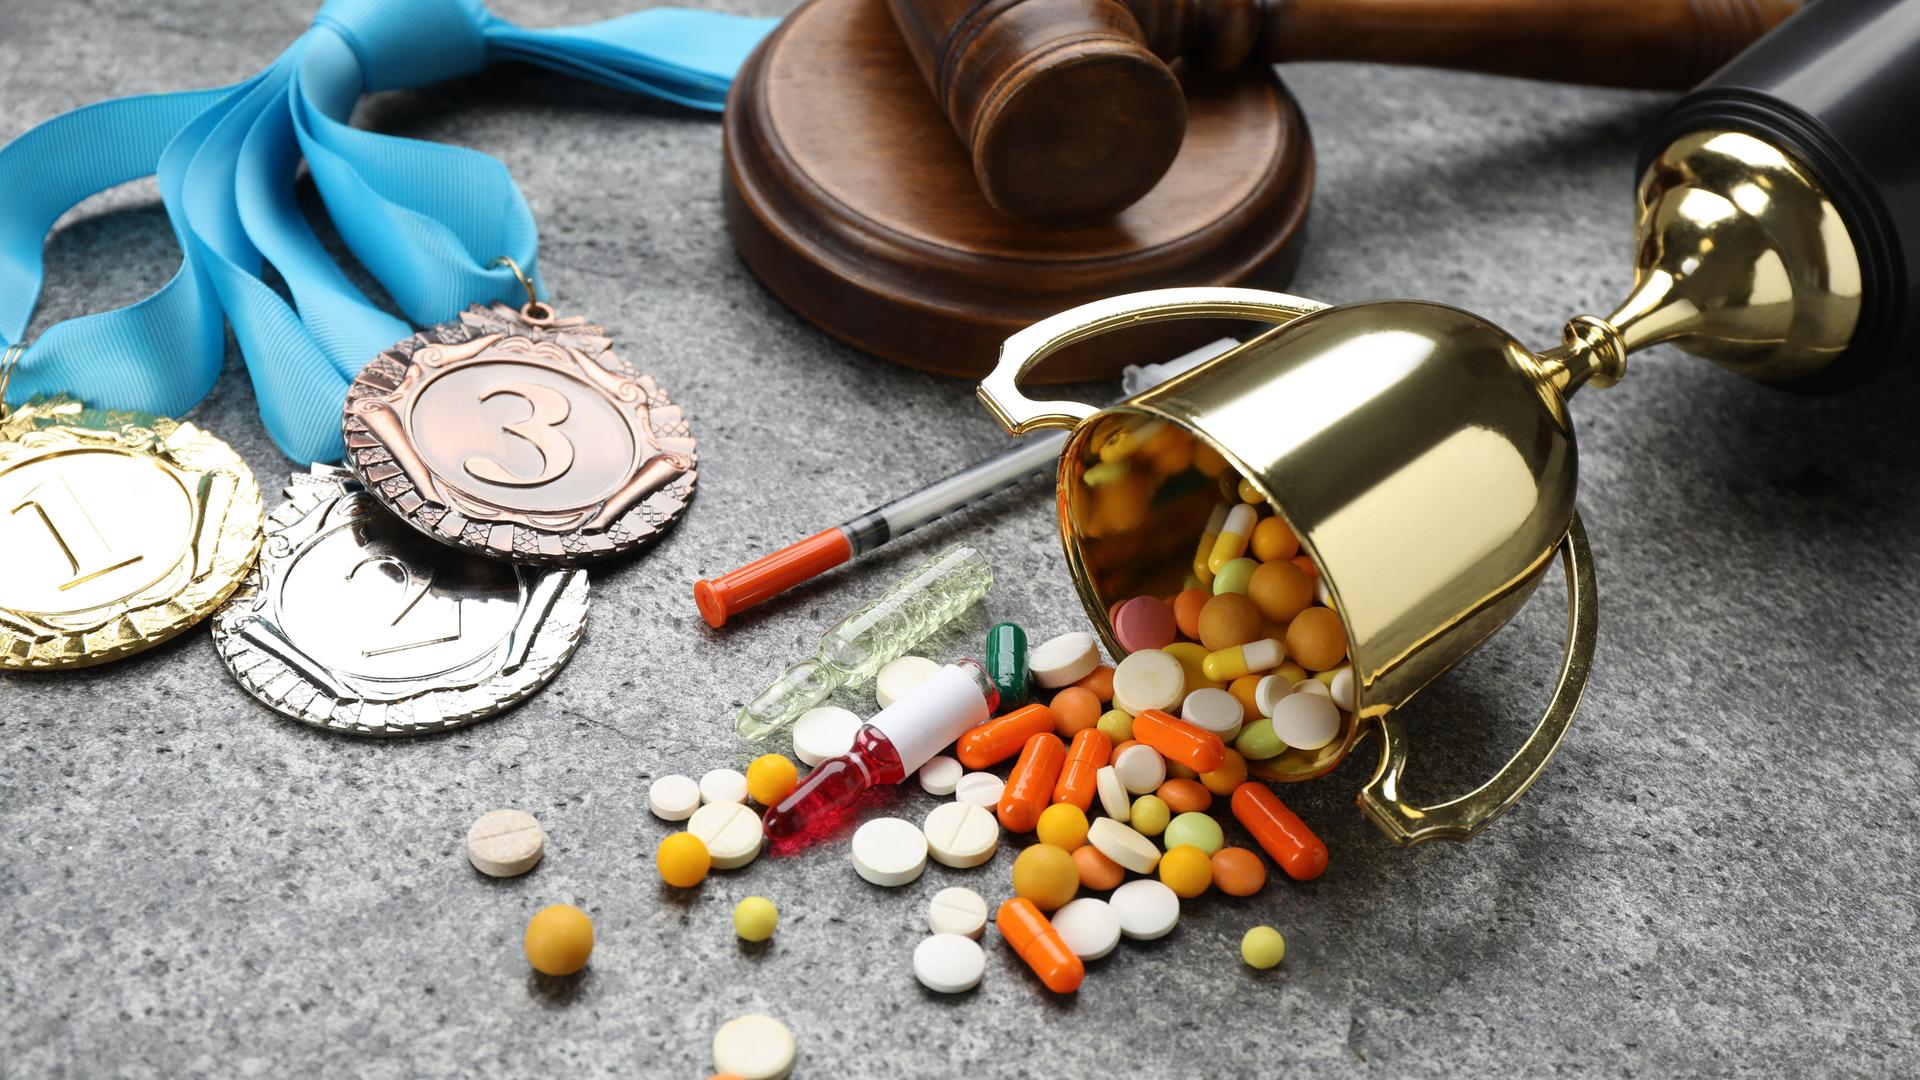 Medaillen, ein Pokal und verschiedene Pillen liegen auf einer Oberfläche.